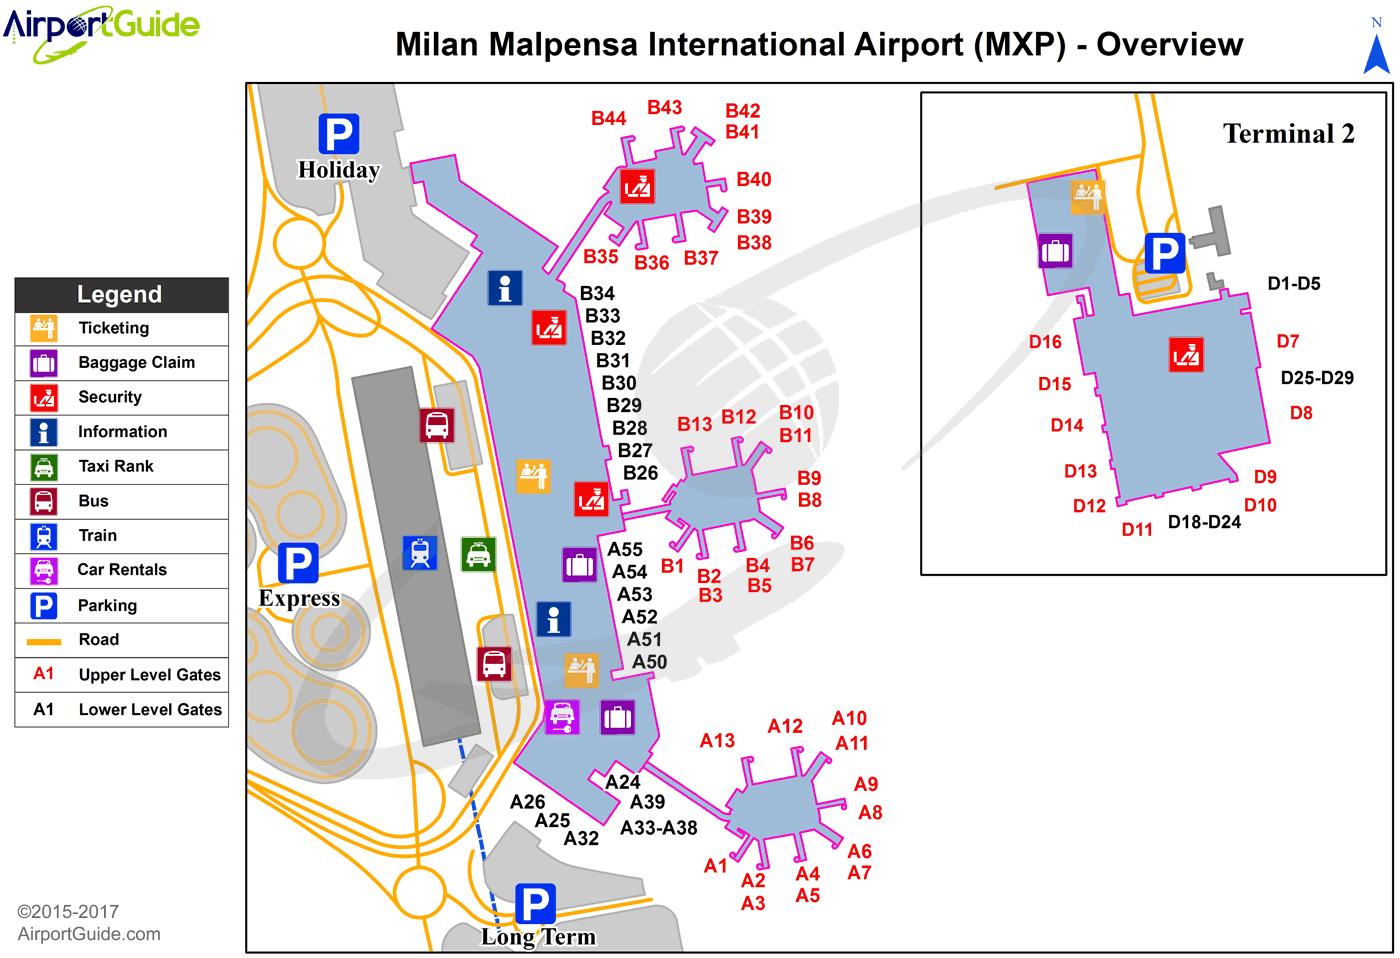 Malpensan terminaali 2: kartta - Kartta malpensan terminaali 2 (Lombardia -  Italia)